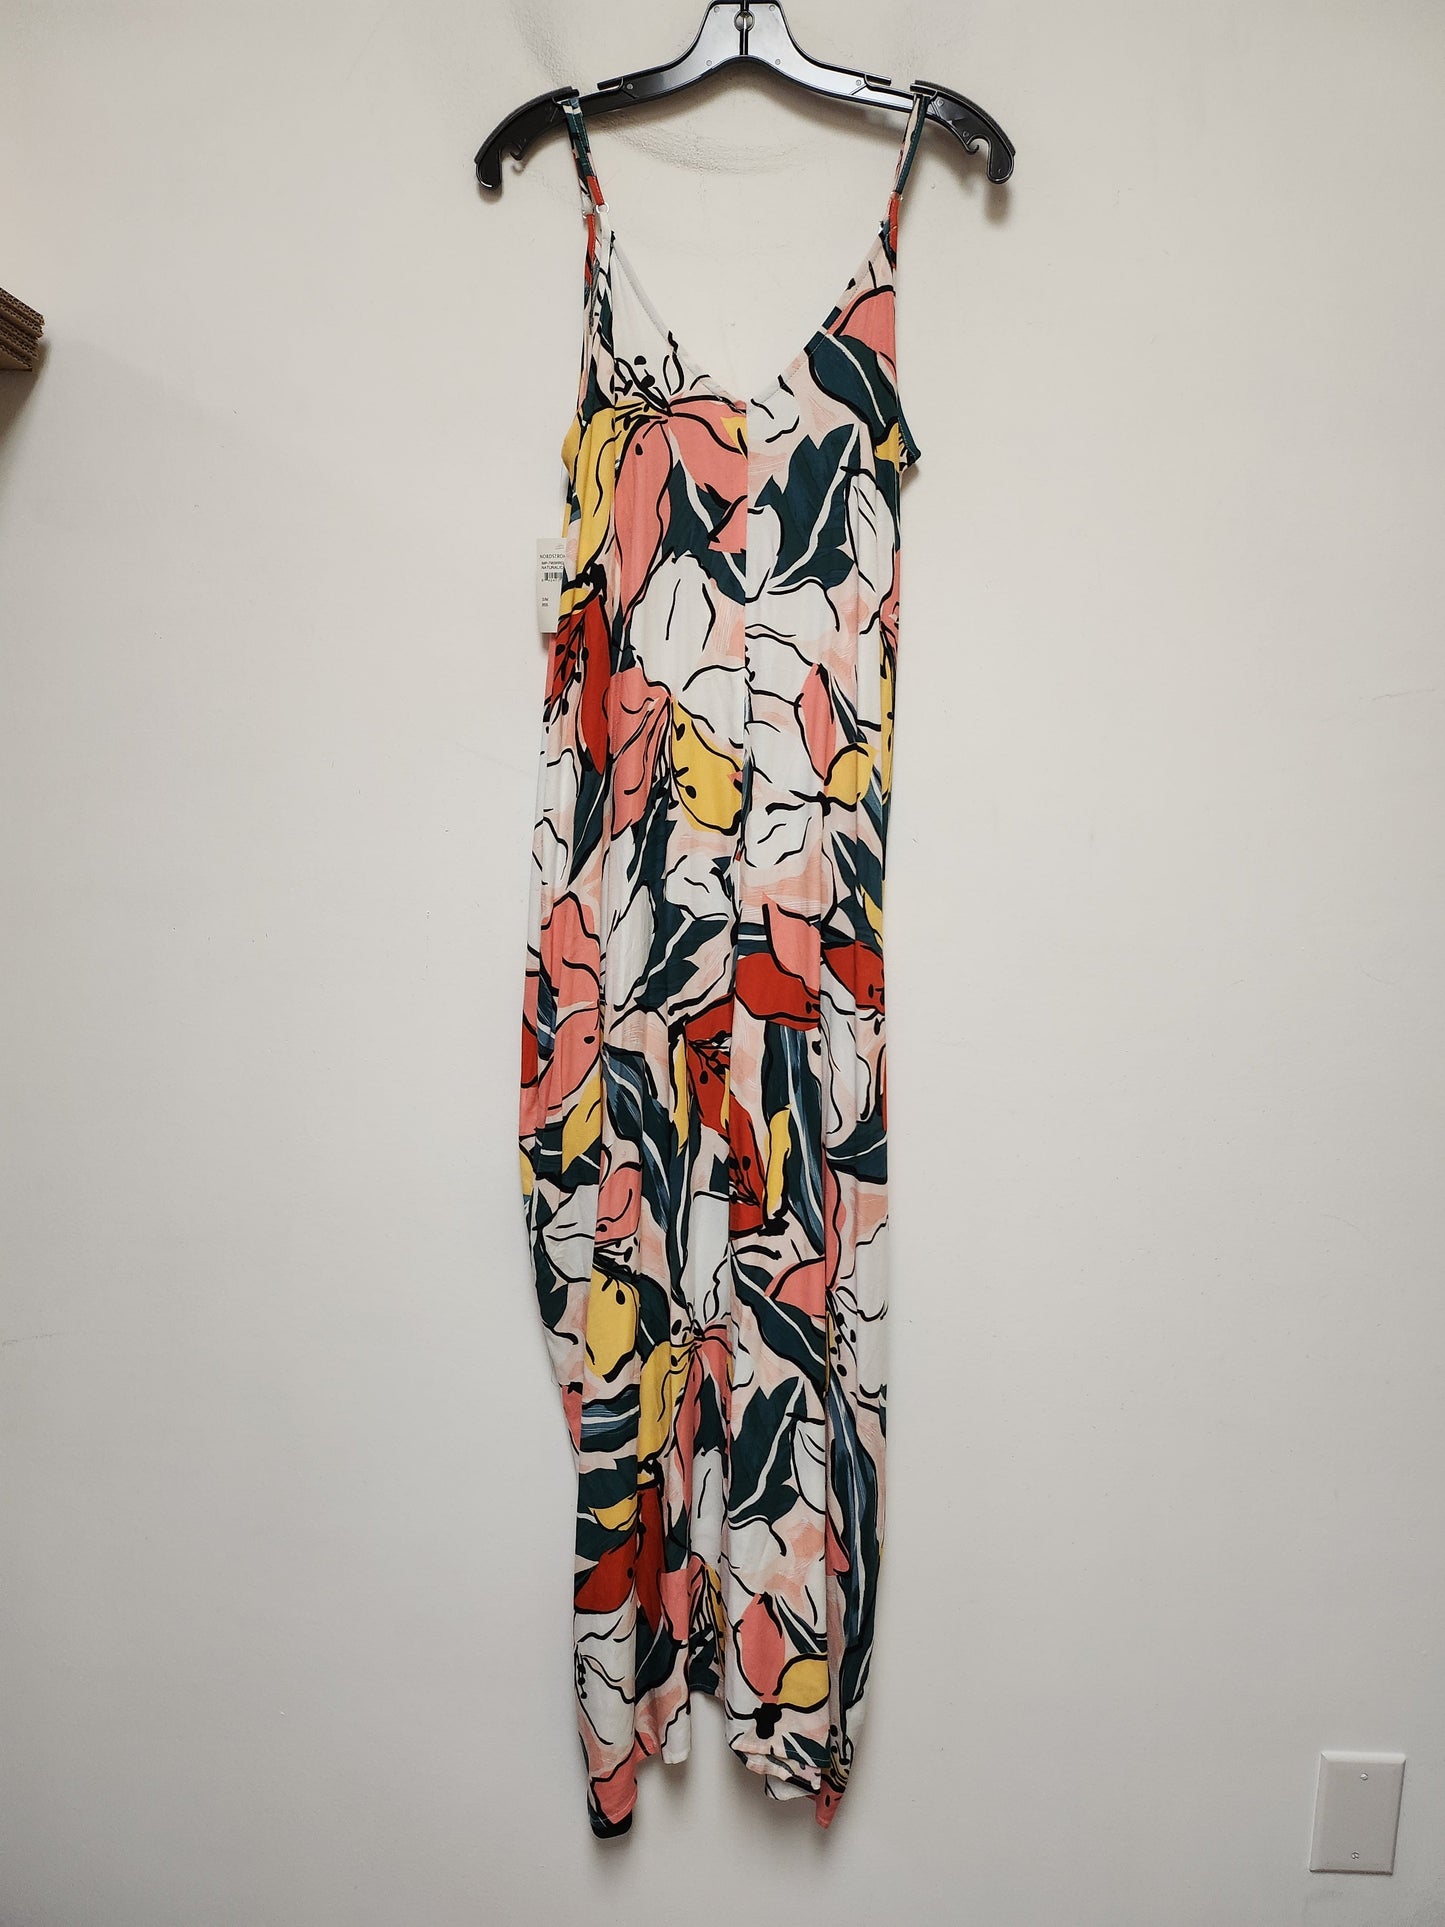 Multi-colored Dress Casual Maxi Lovestitch, Size S